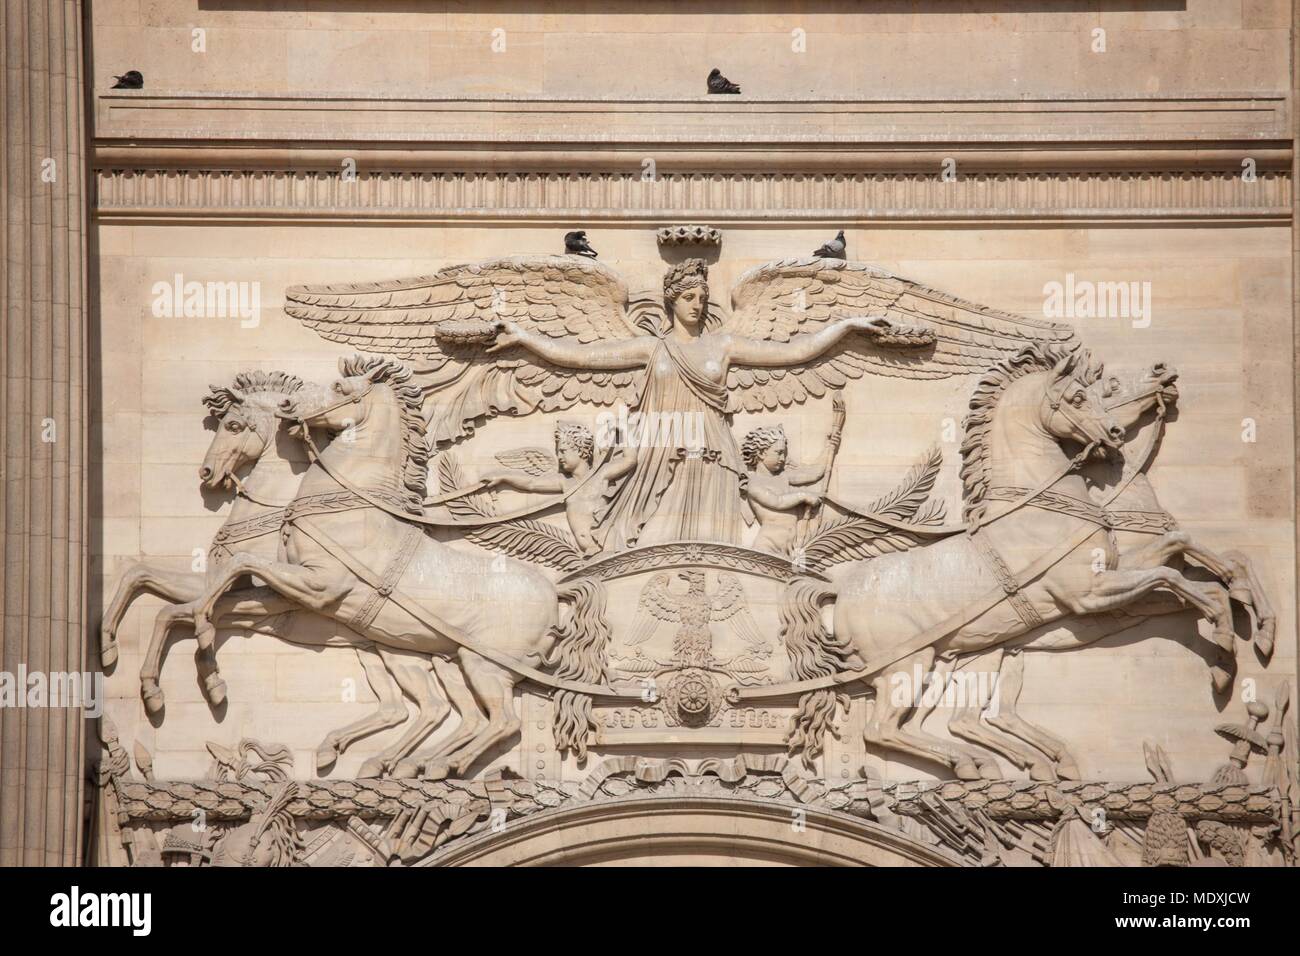 Paris, musée du Louvre, Perrault's Colonnade, architect Claude Perrault, detail gate, Napoleon I, relief, Stock Photo